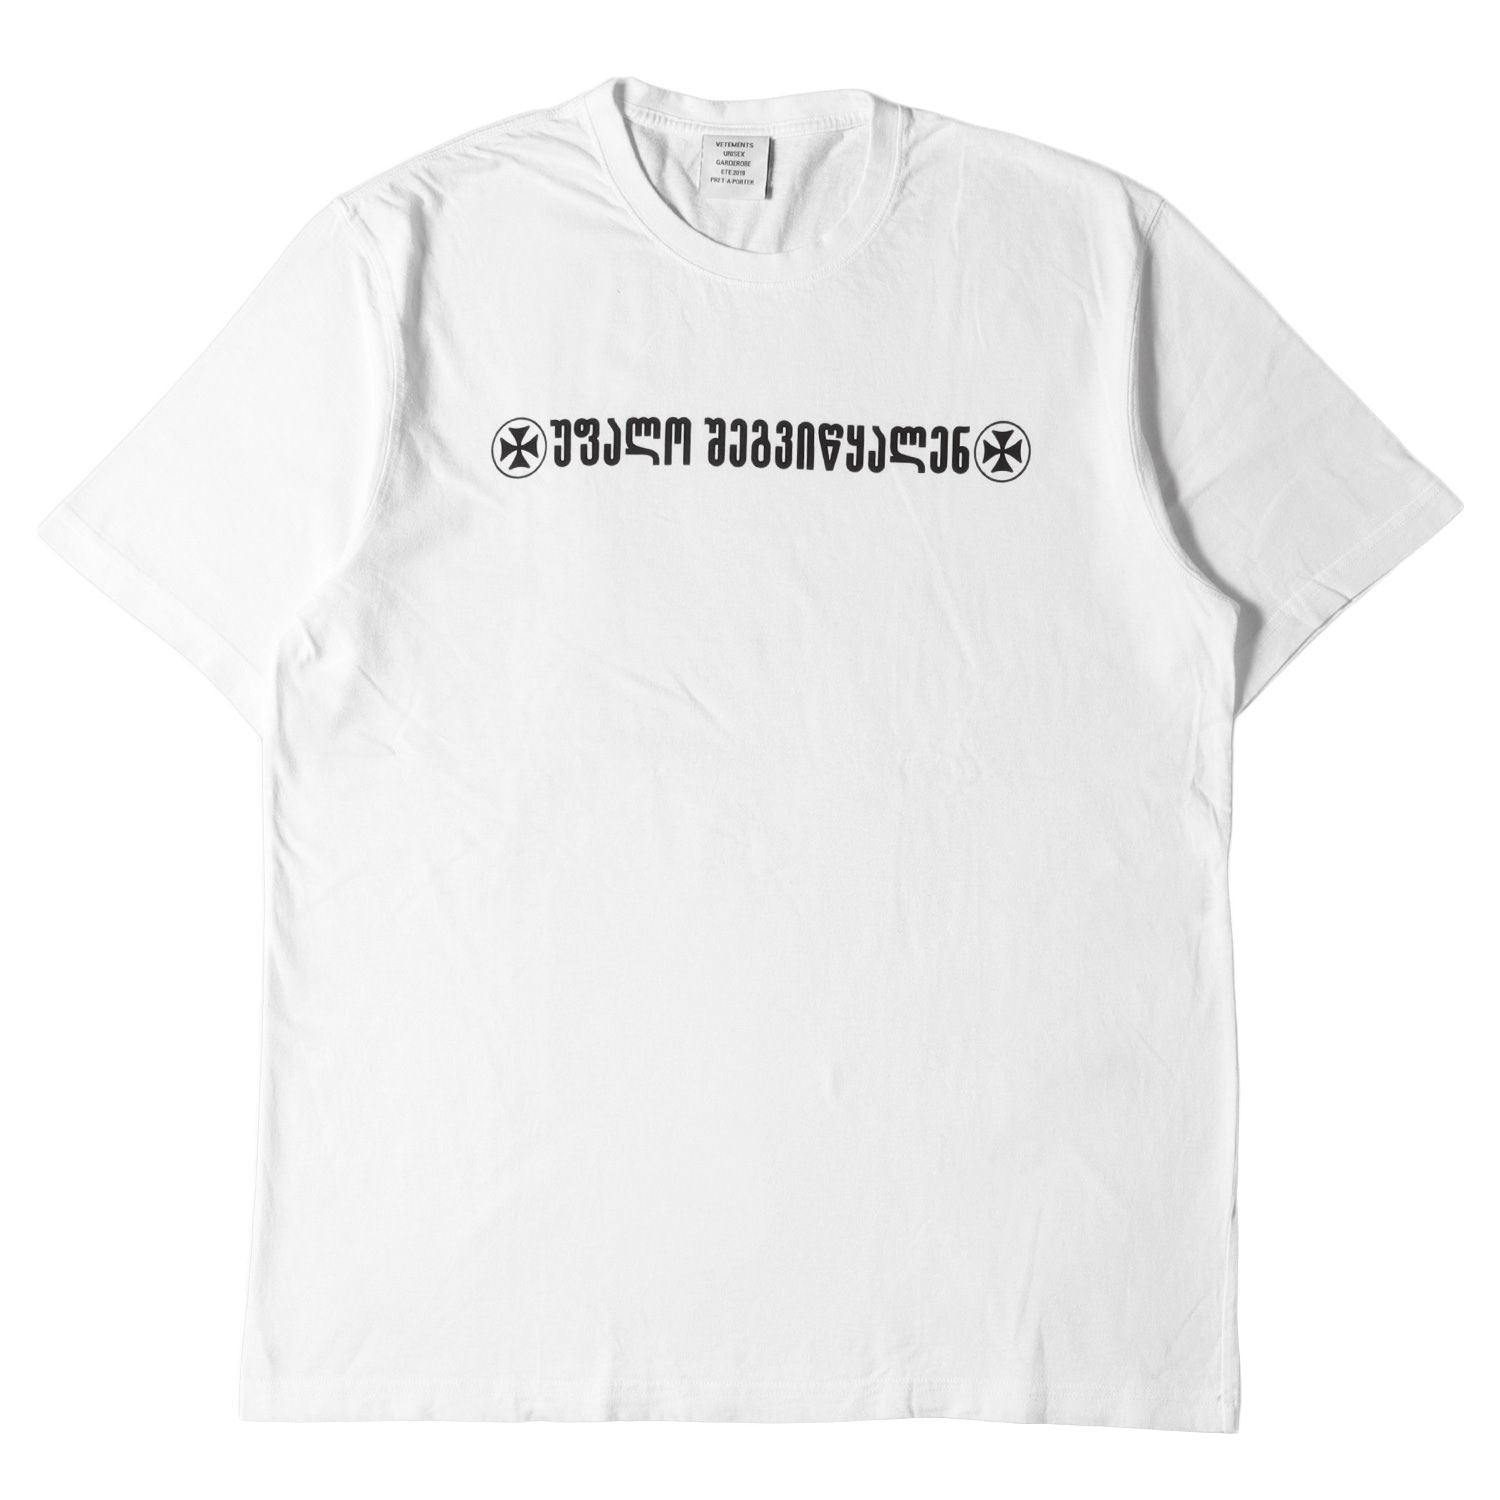 VETEMENTS ヴェトモン Tシャツ サイズ:L グルジアロゴ クルーネック Tシャツ 19SS ホワイト 白 トップス カットソー 半袖  ブランド カジュアル